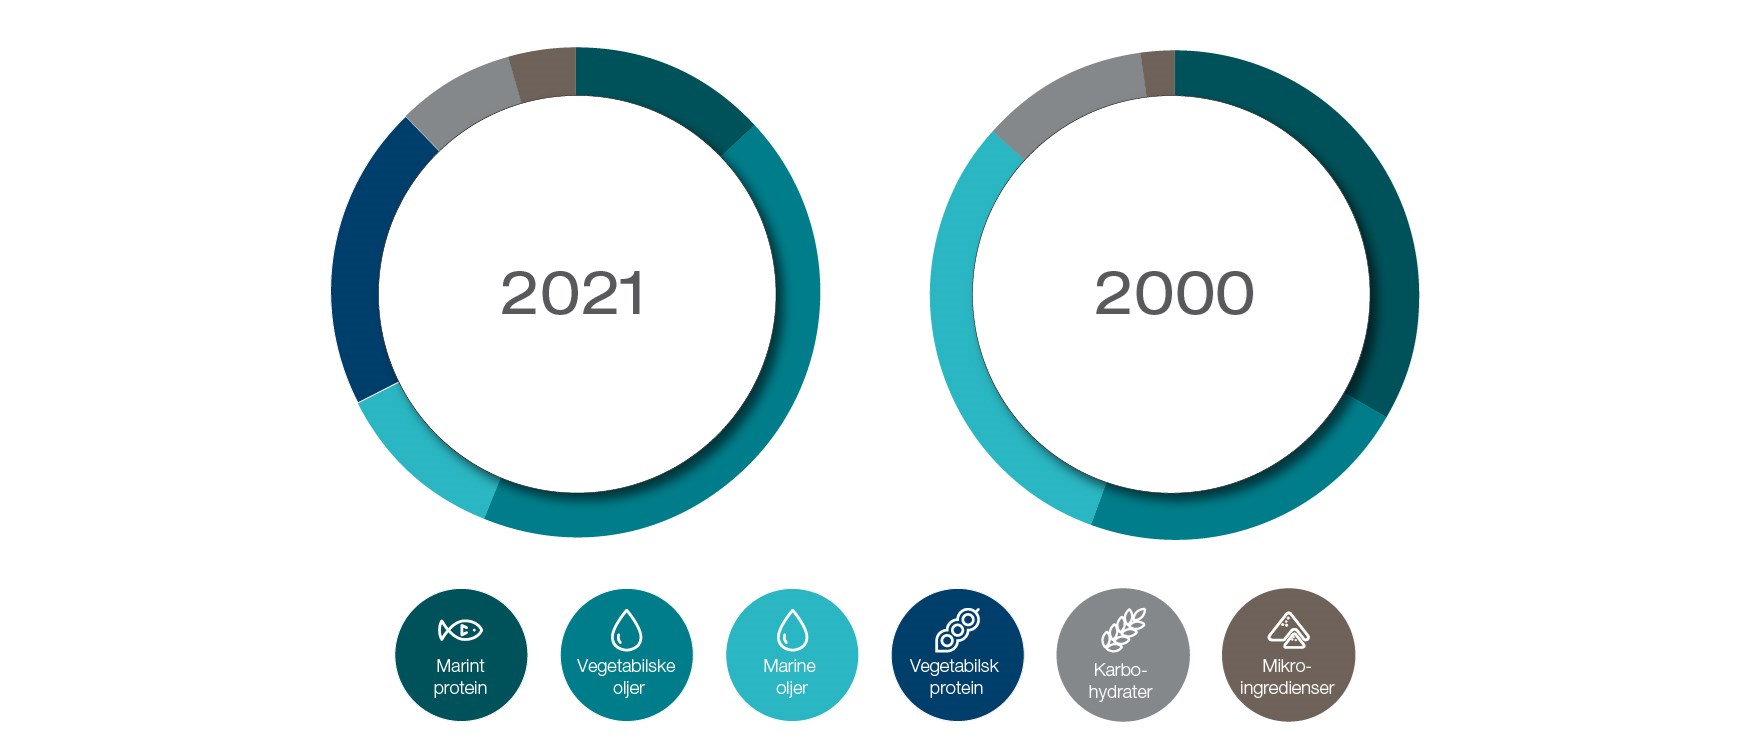 Fôrsammensetning i 2021 sammenlignet med 2000